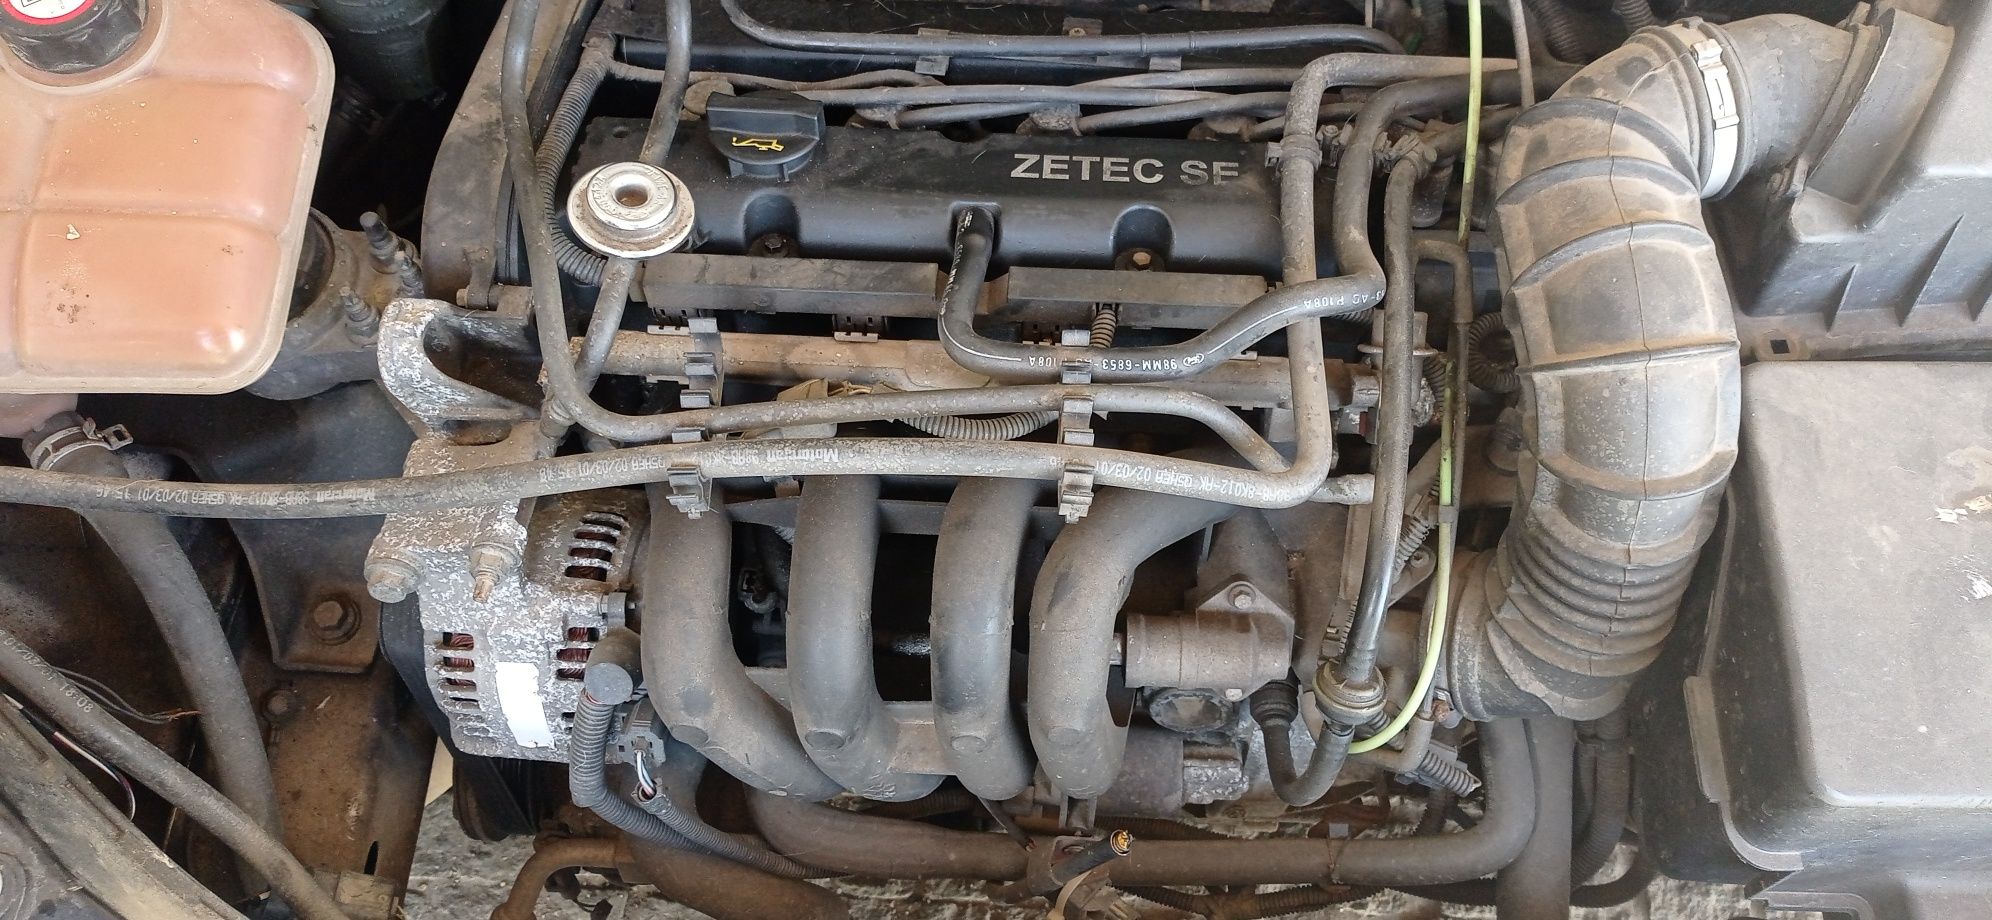 Motor ford zetec SE e caixa de velocidades do ford focus